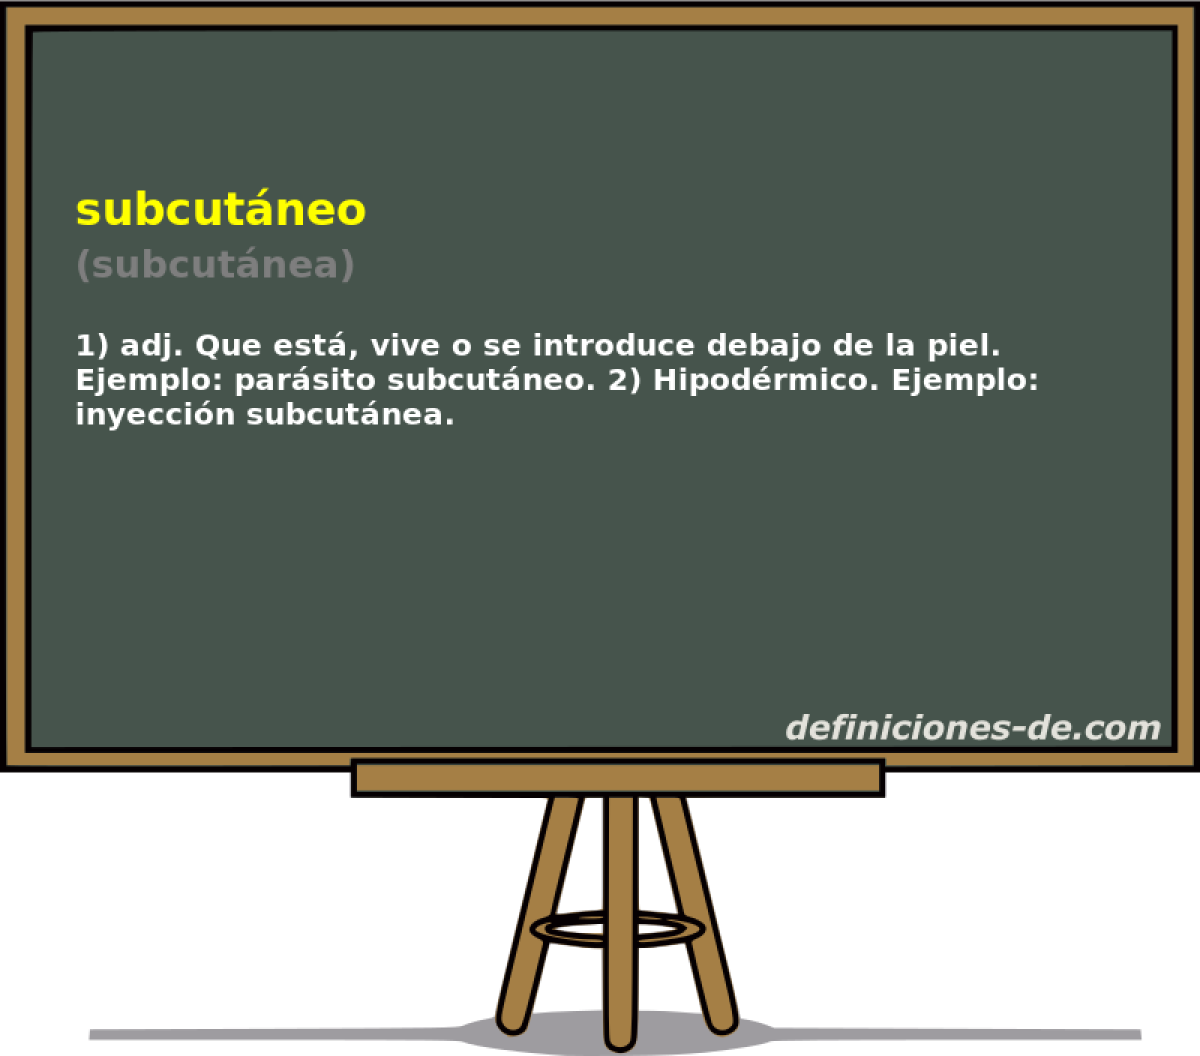 subcutneo (subcutnea)